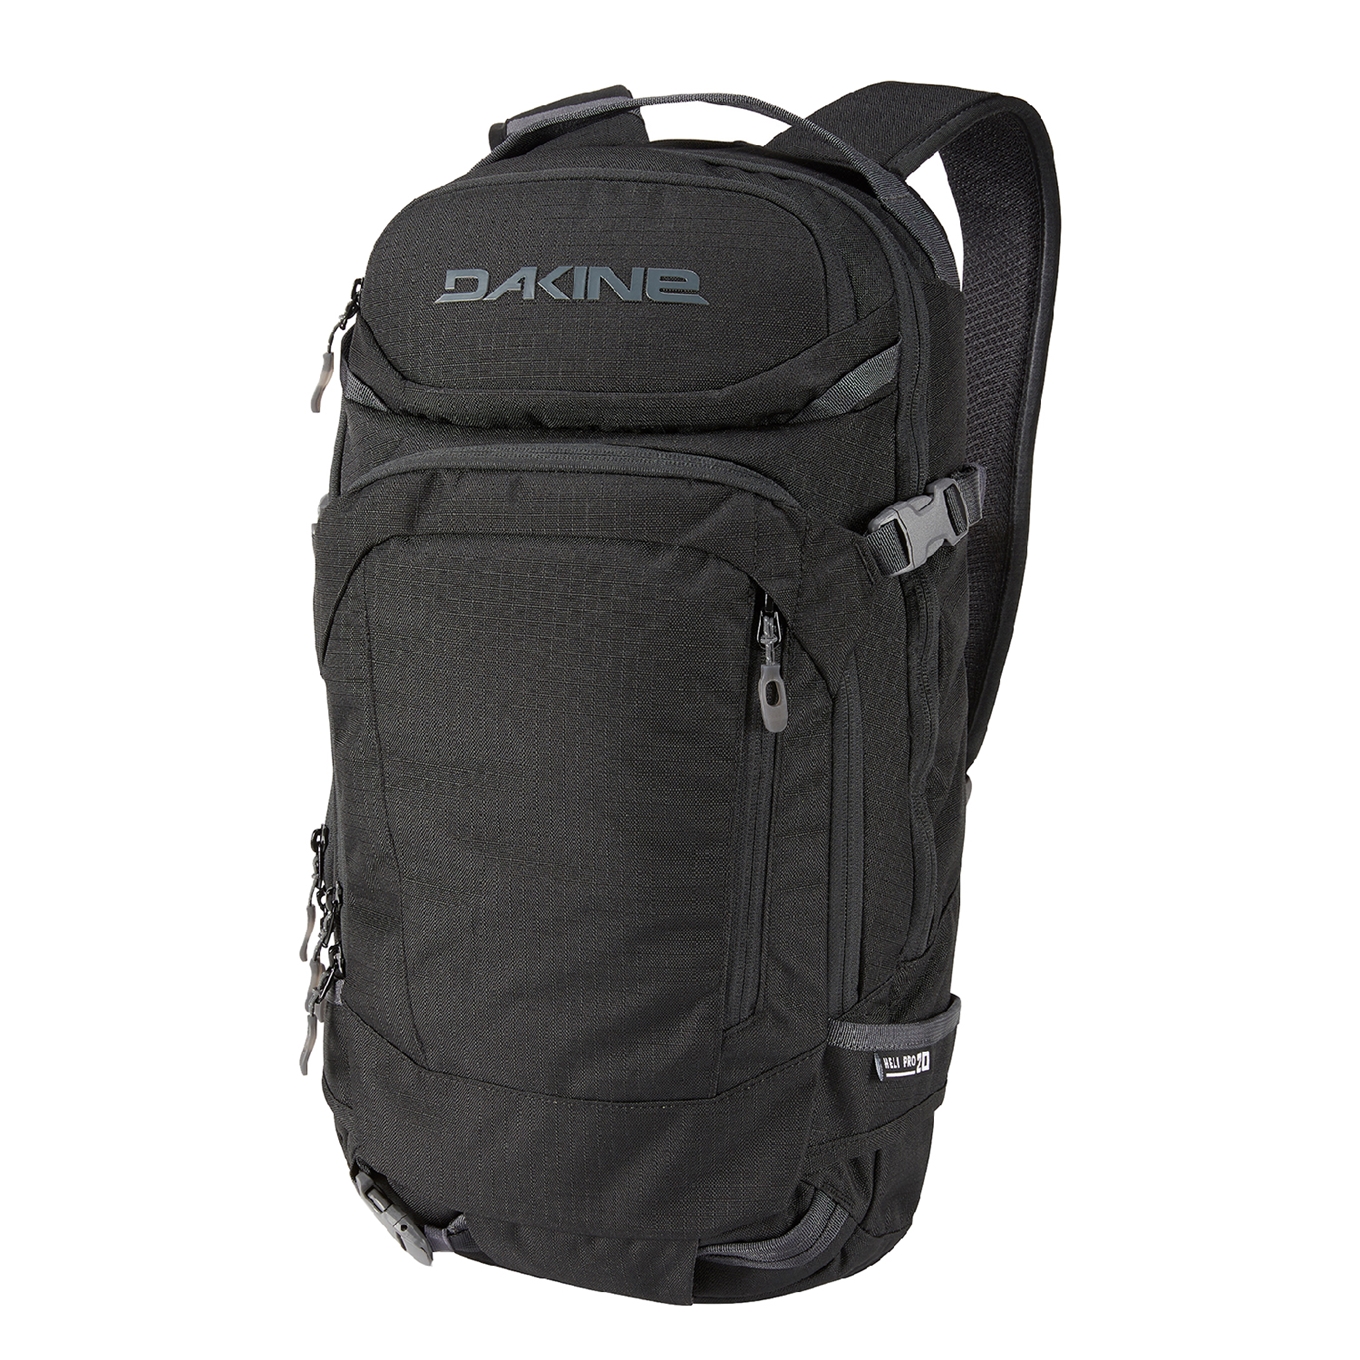 Dakine Heli Pro 20L Rugzak black II backpack